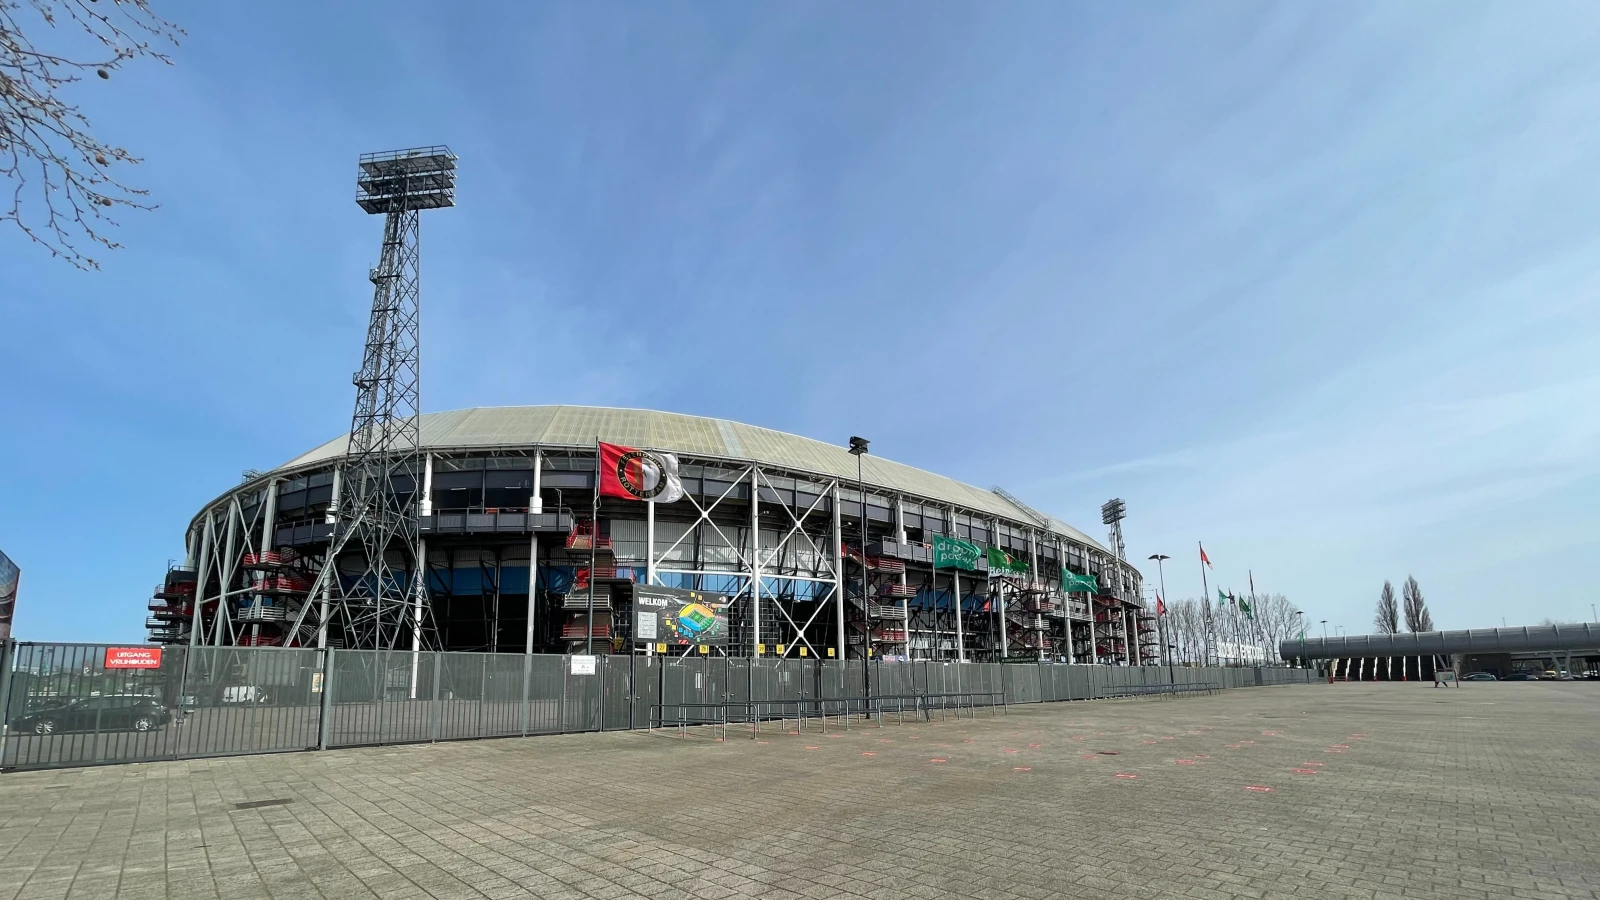 VI: 'Feyenoord en FC Utrecht belanden bij arbitragecommissie'